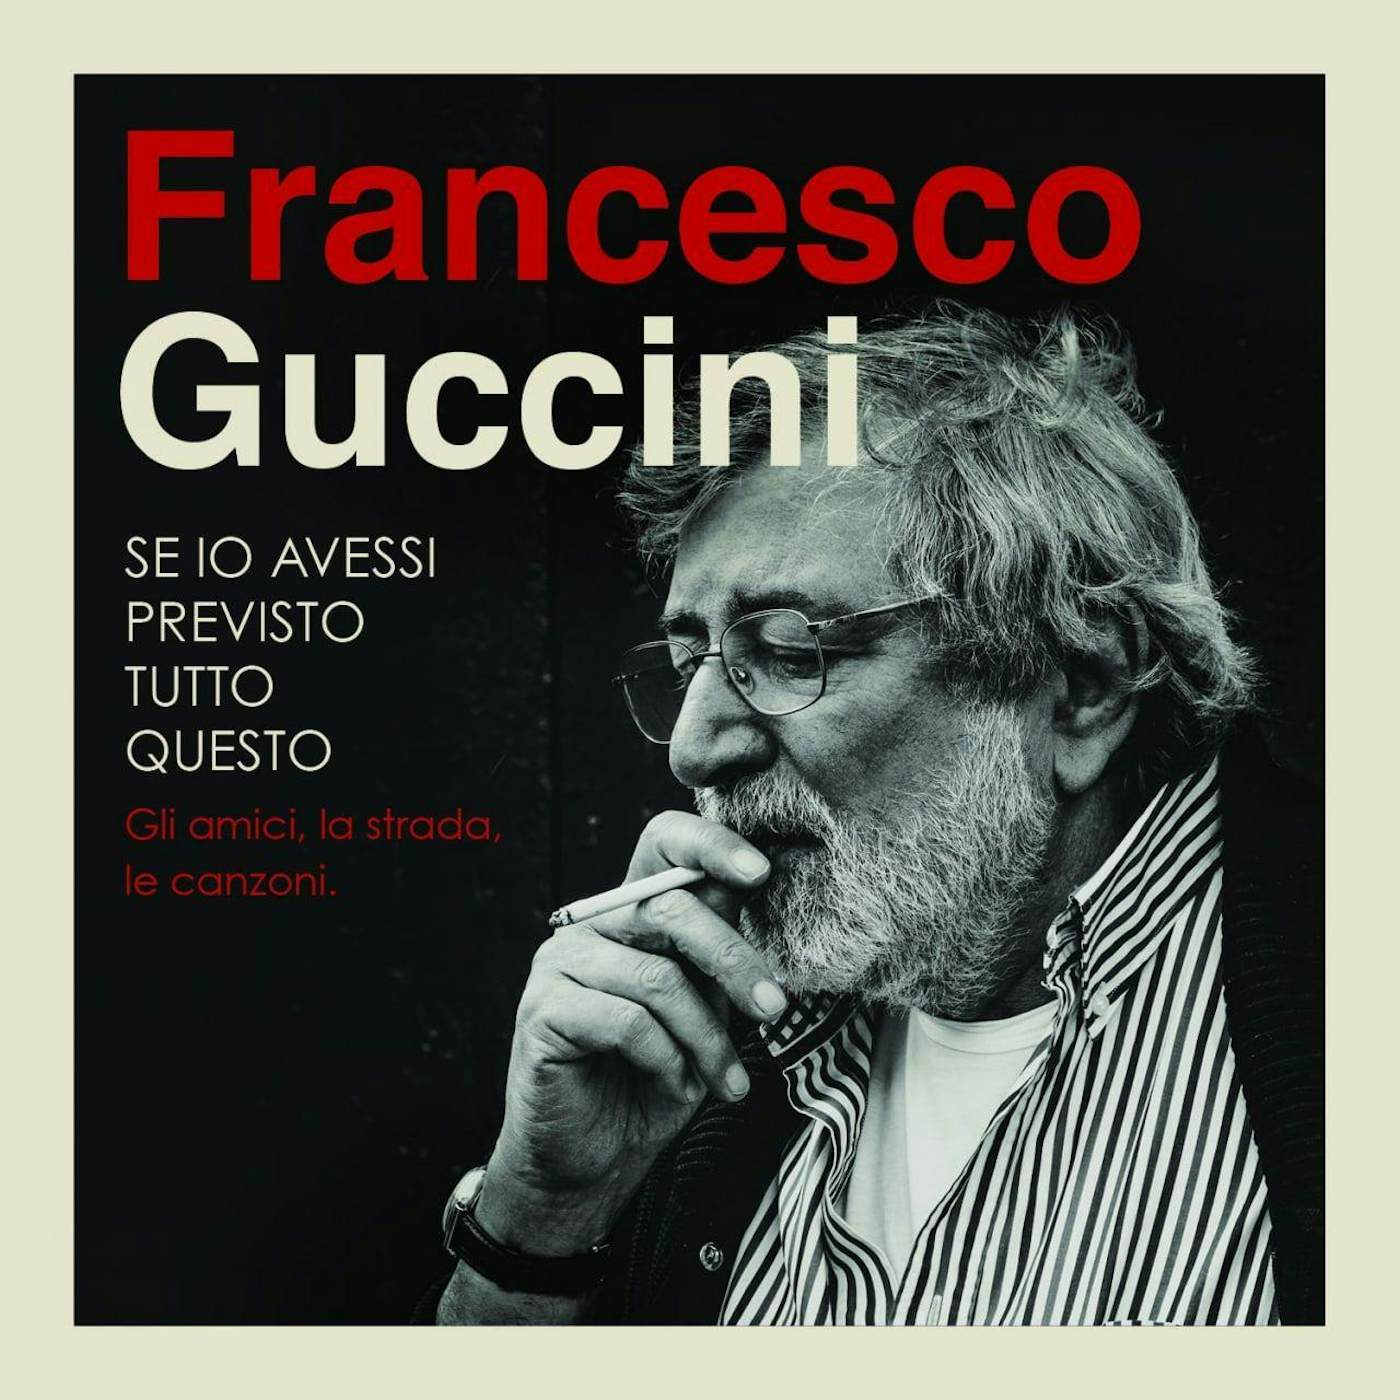 Francesco Guccini Se Io Avessi Previsto Tutto Questo la Strada Gli a (4 CD)